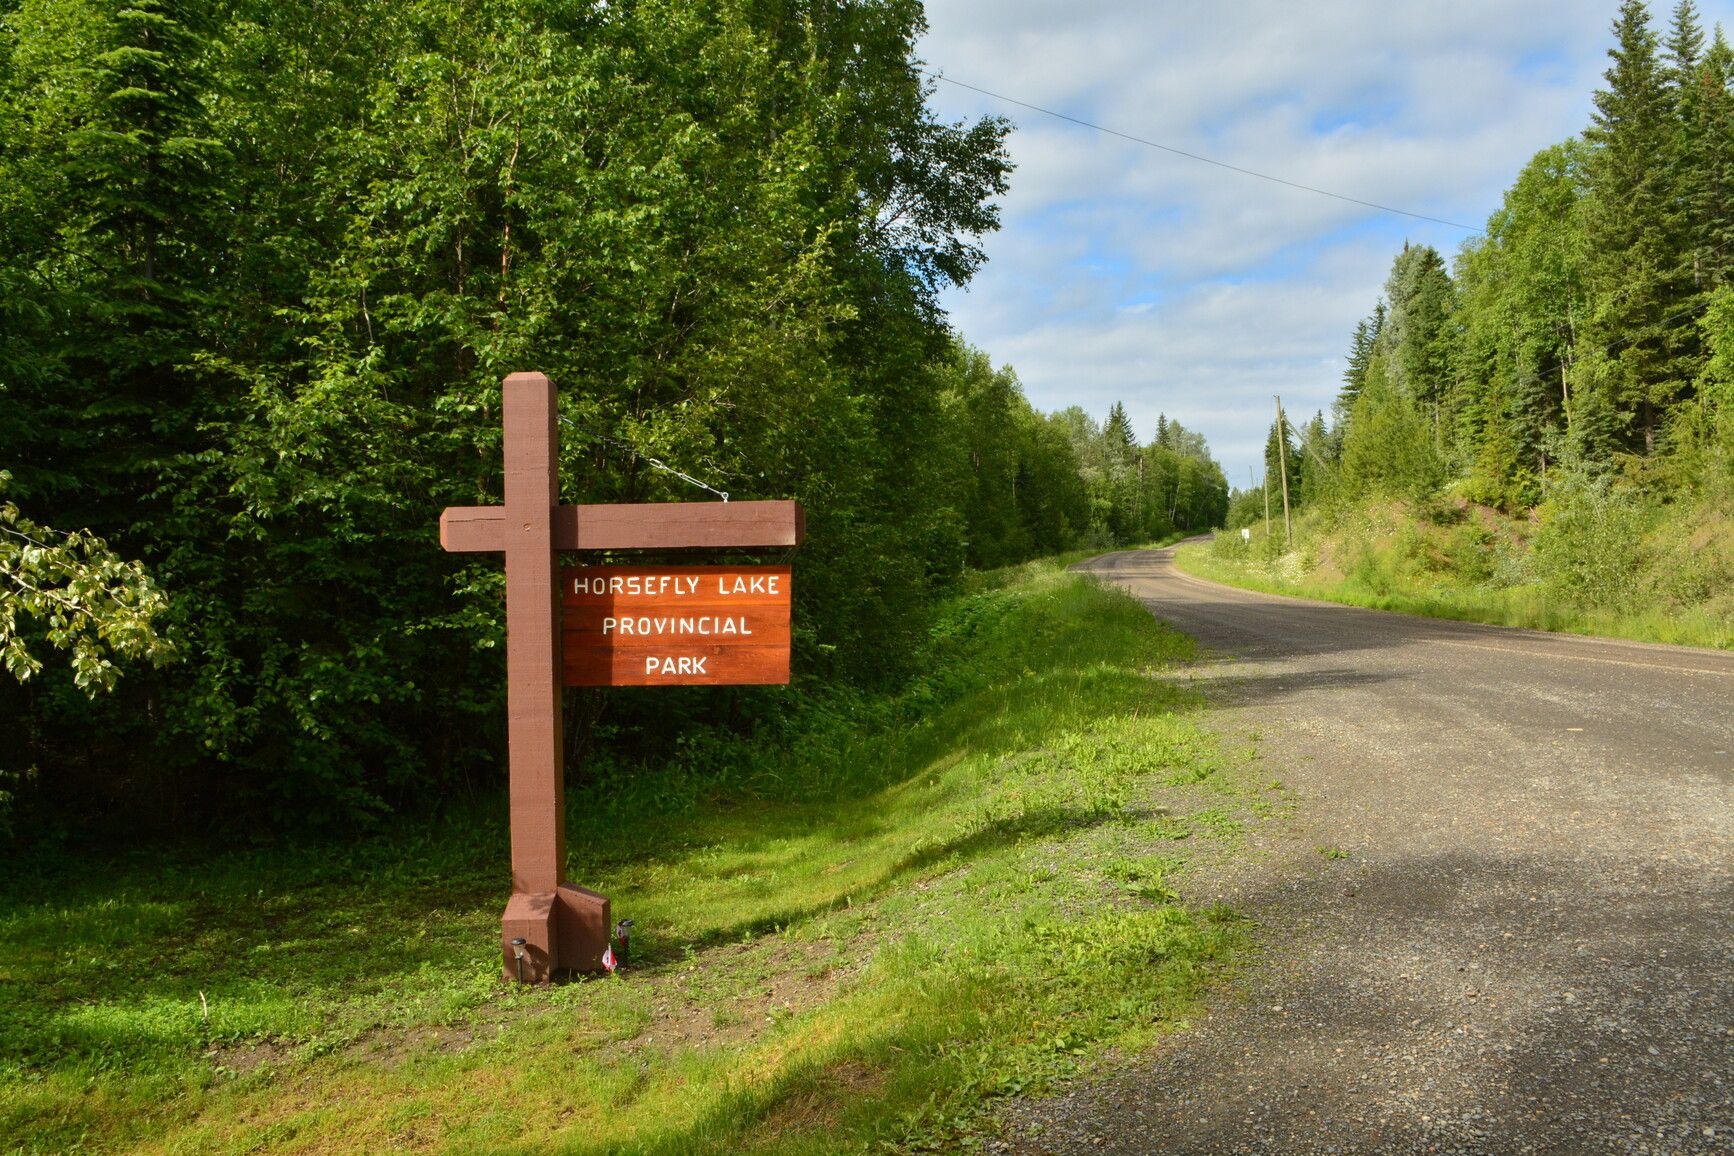 Entrance sign at Horsefly Lake Park.